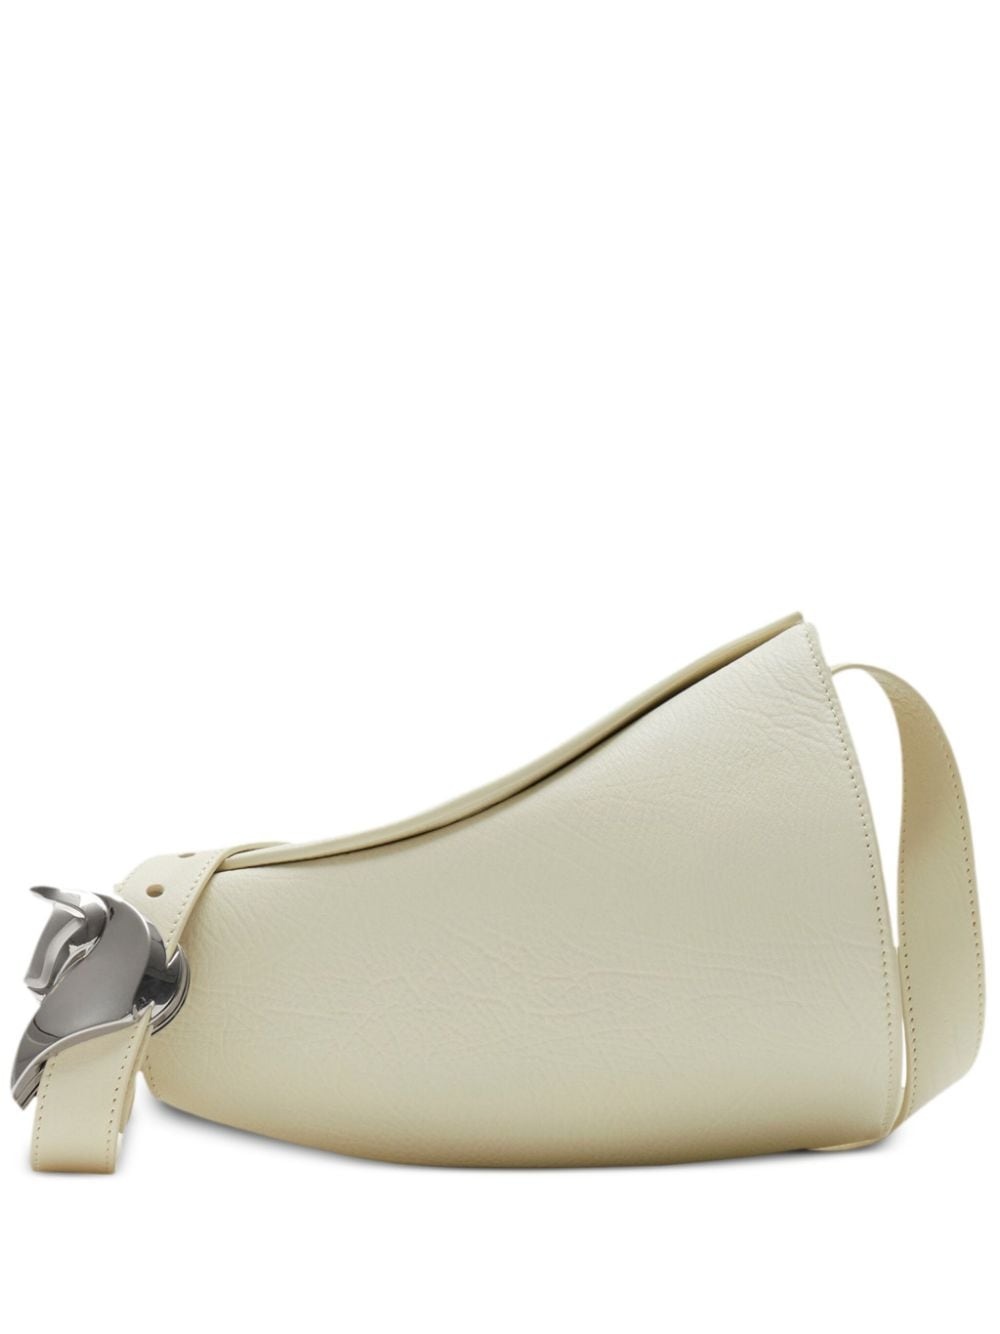 small Horn leather shoulder bag - 1